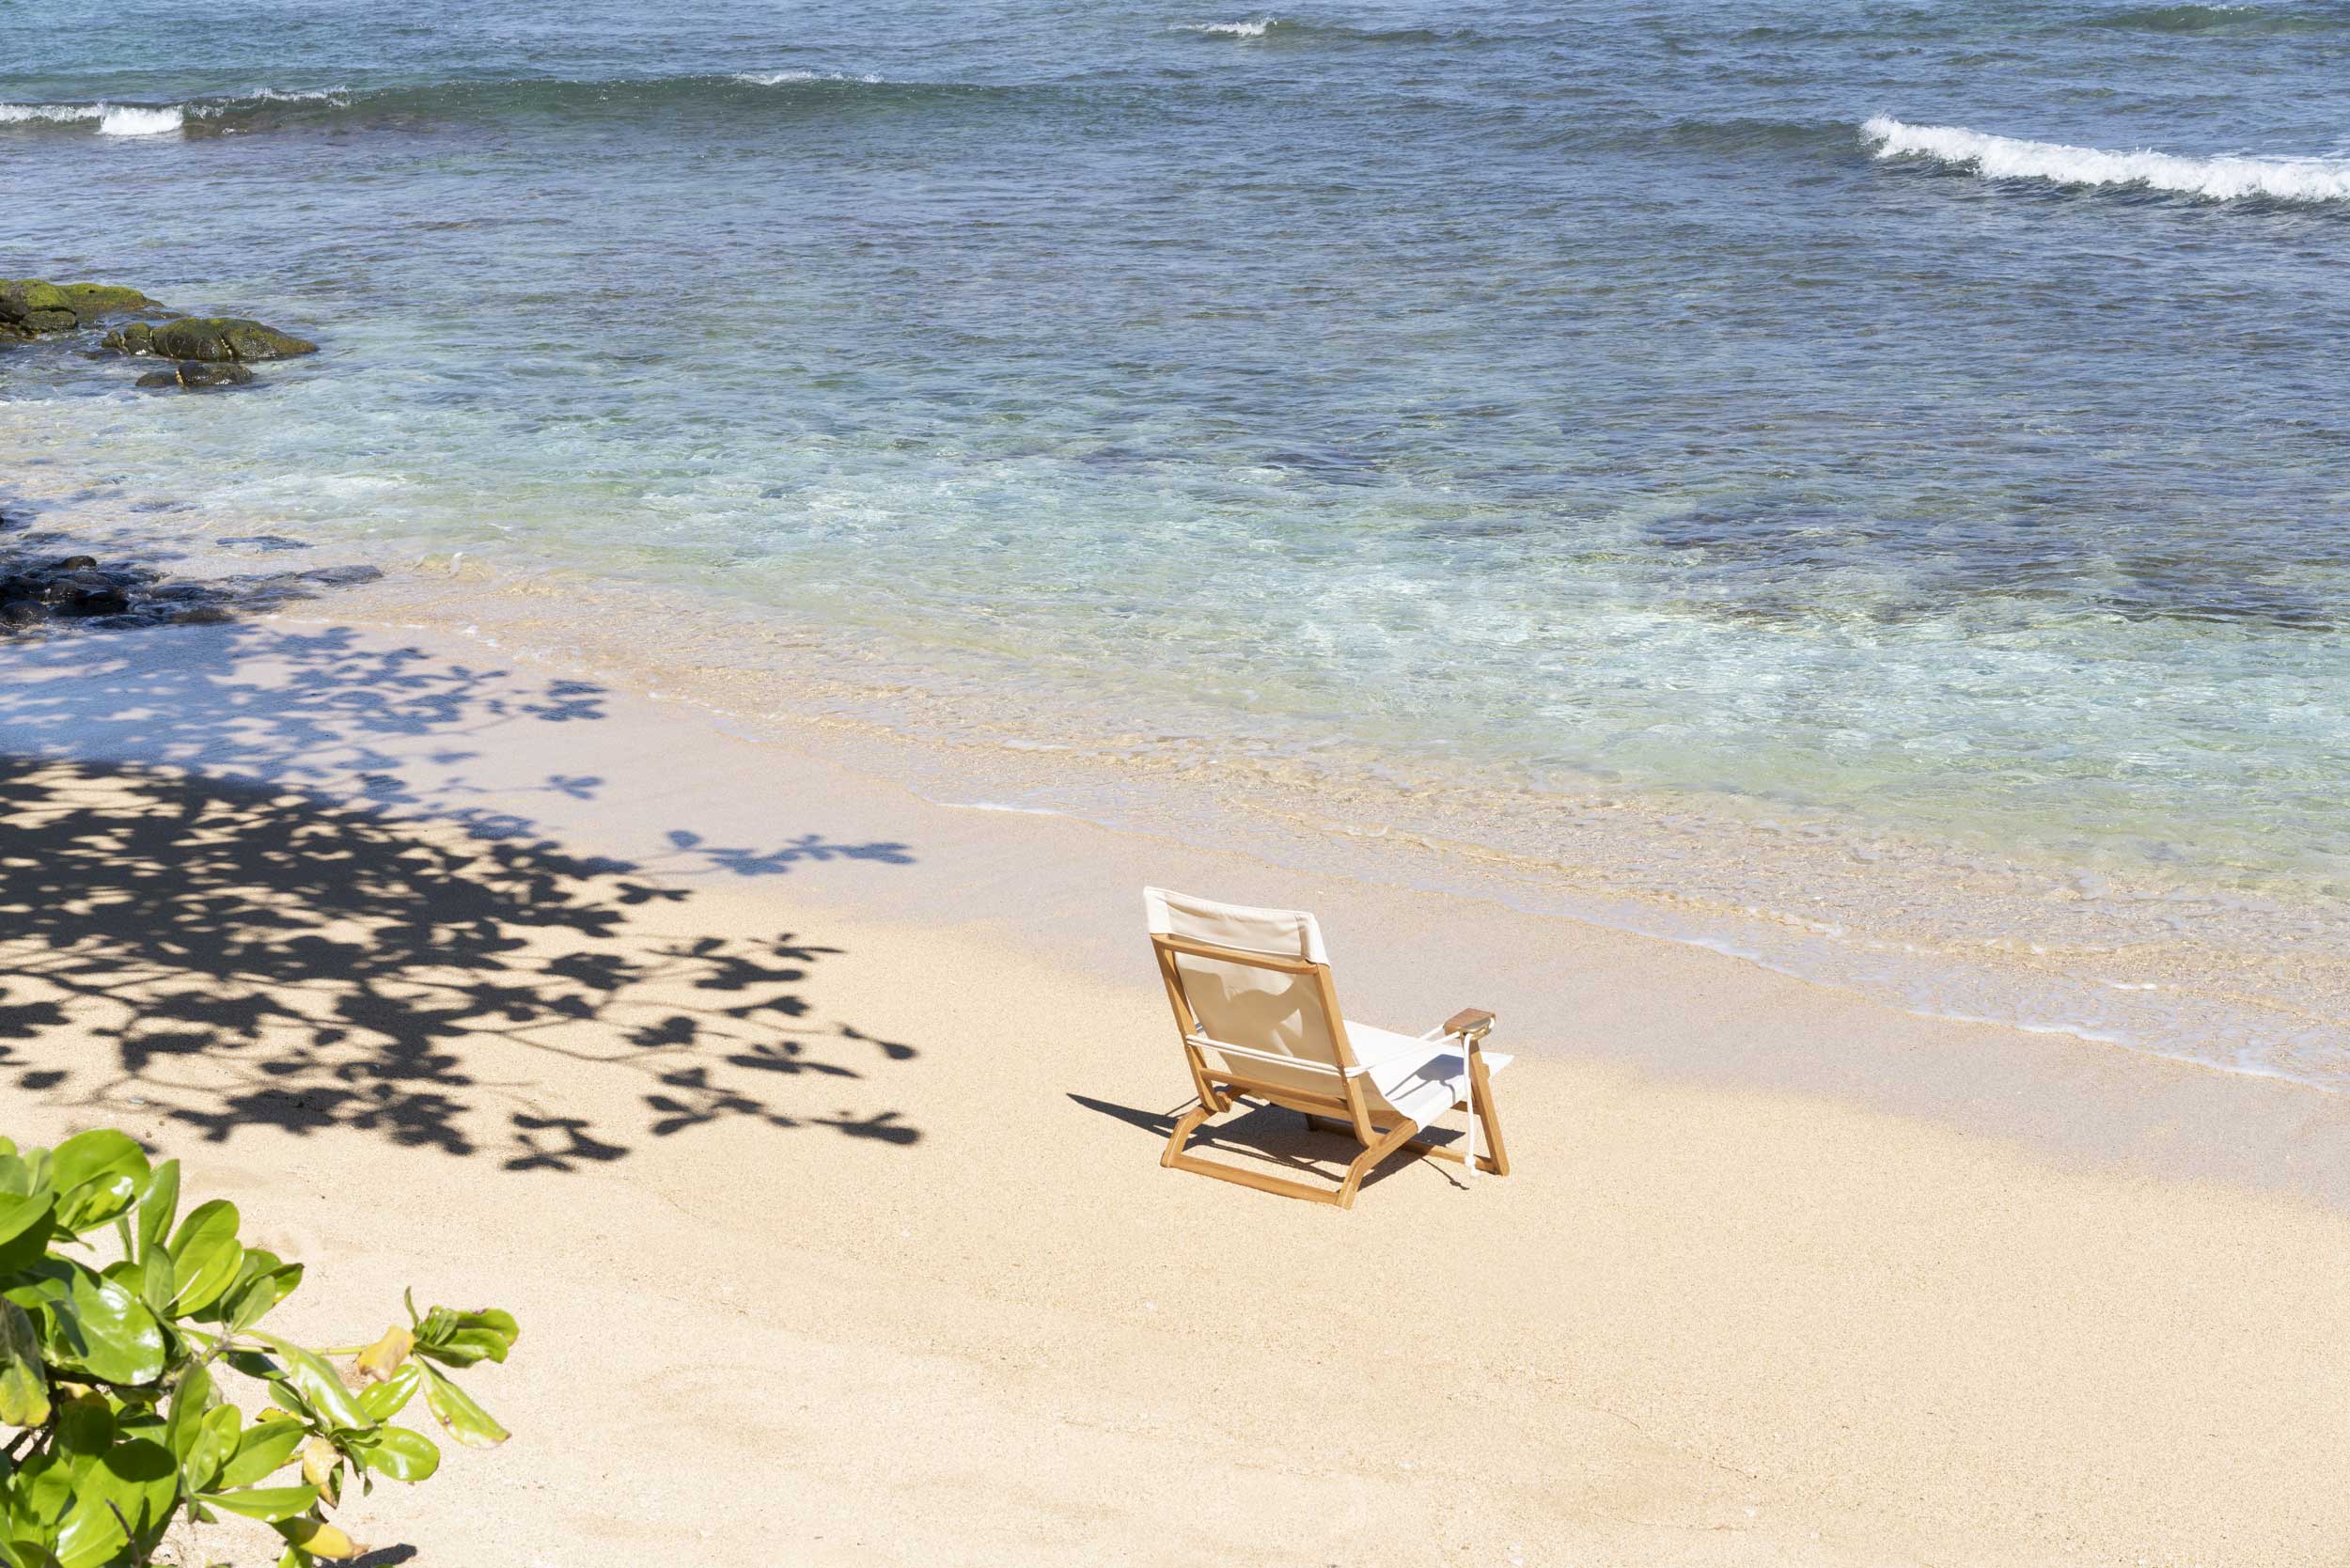 Shorebird Beach Chair on the beach in Hawaii